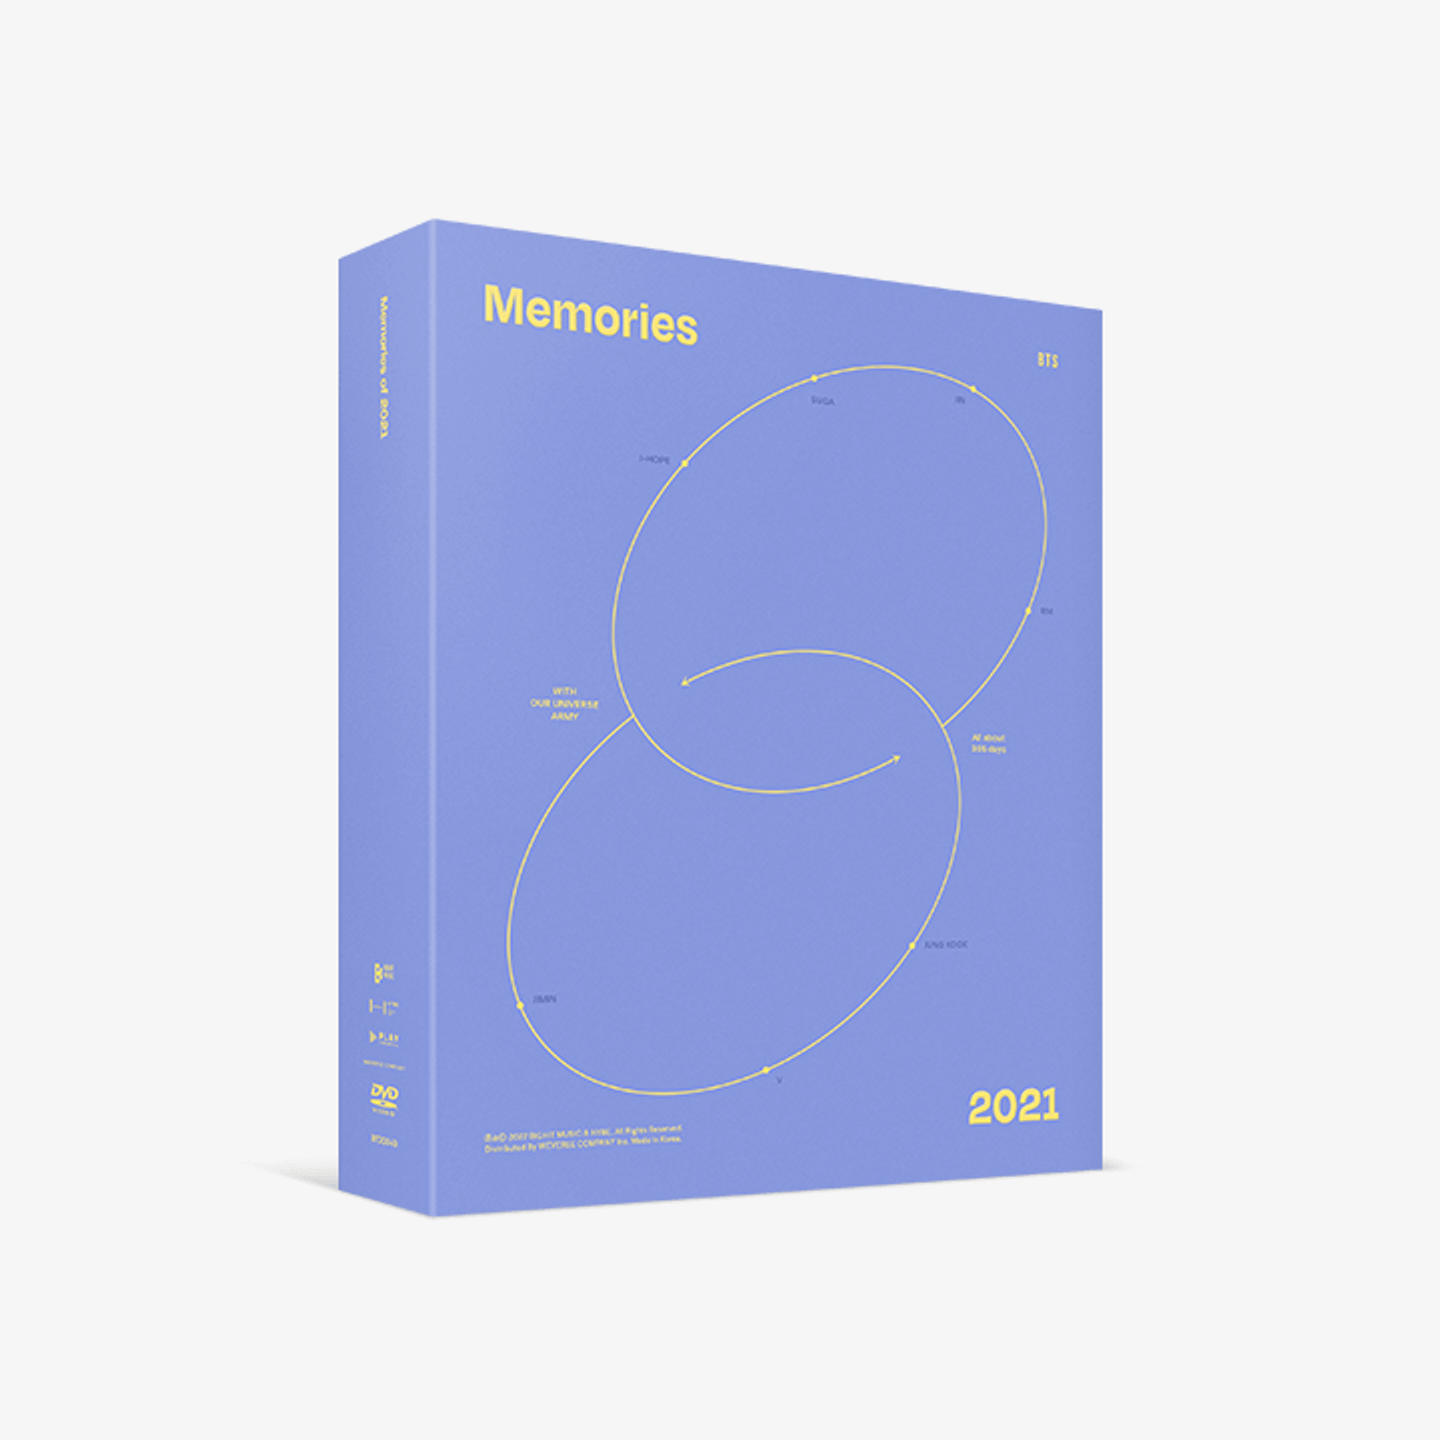 BTS - Memories of 2021 DVD